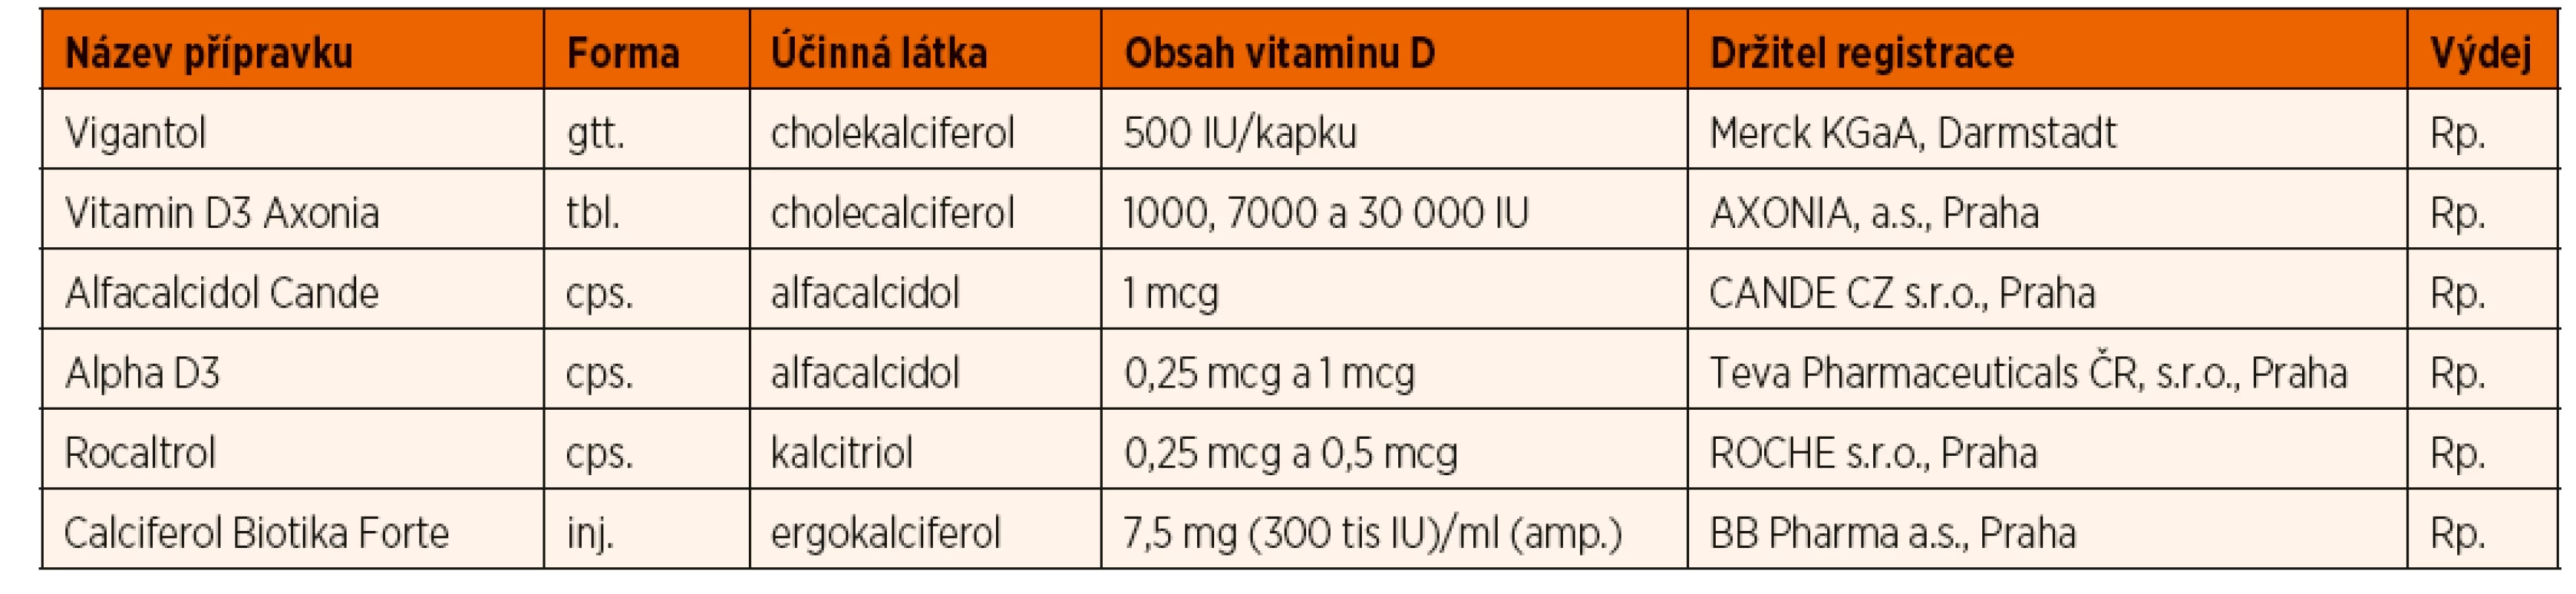 Přehled některých léků s obsahem vitaminu D registrovaných v ČR.
(Kalcitriol a alfacalcidiol nevyžadují hydroxylaci v ledvinách, jejich místo je v terapii deficitu vitaminu D u nefropatií, dále v terapii
hypoparatyreózy a pseudohypoparatyreózy).